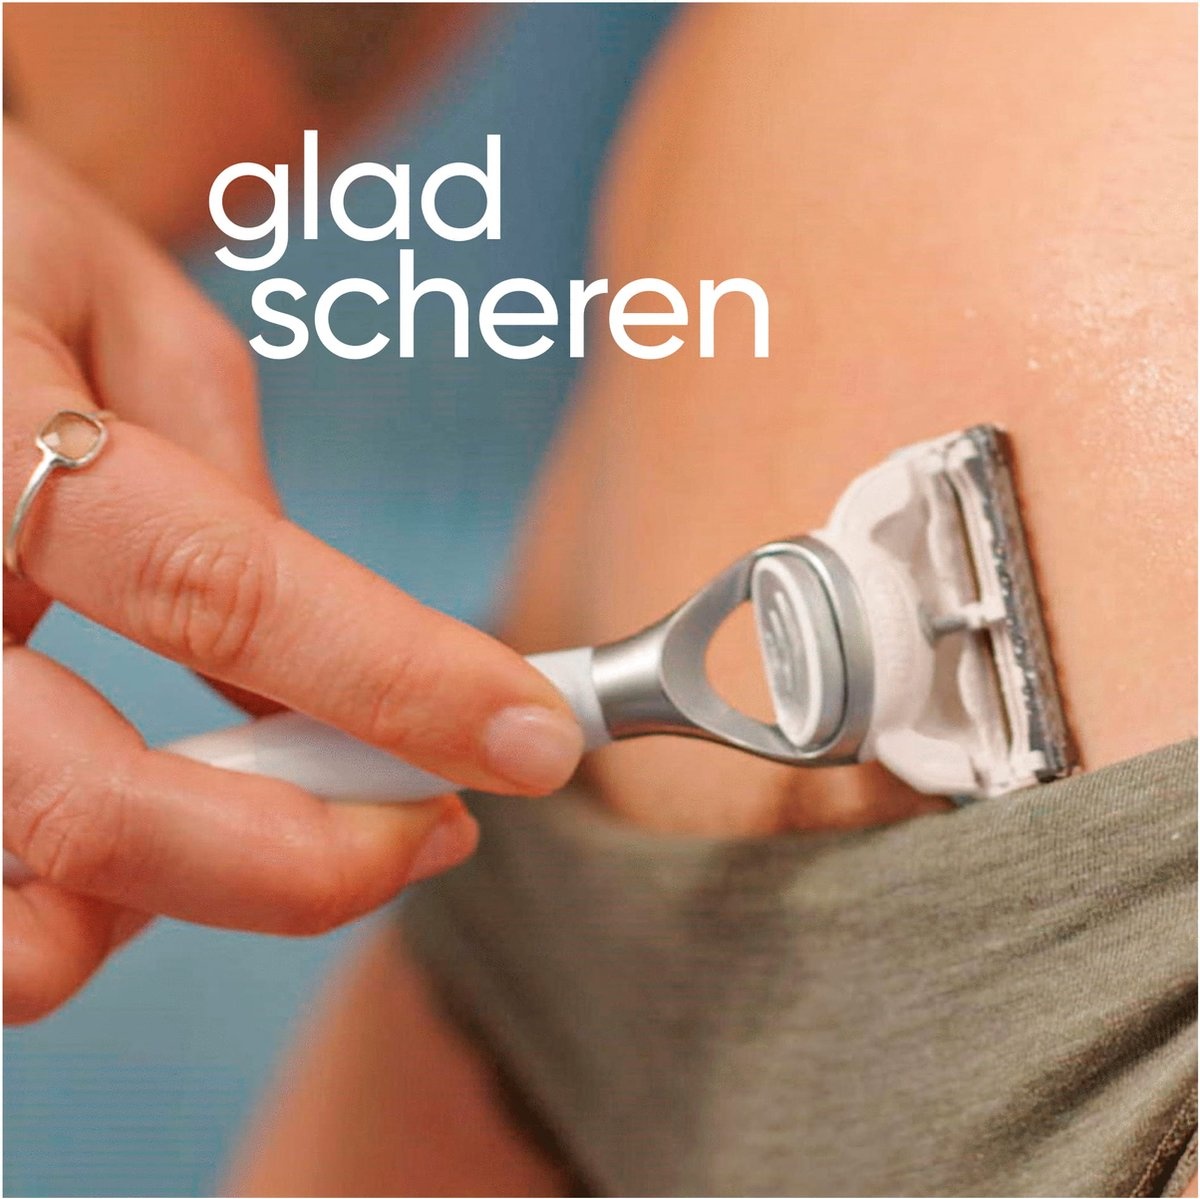 Gillette Venus Satin Care - 4 Scheermesjes - Voor Vrouwen - Voor Huid en Schaamhaar - Verpakking beschadigd